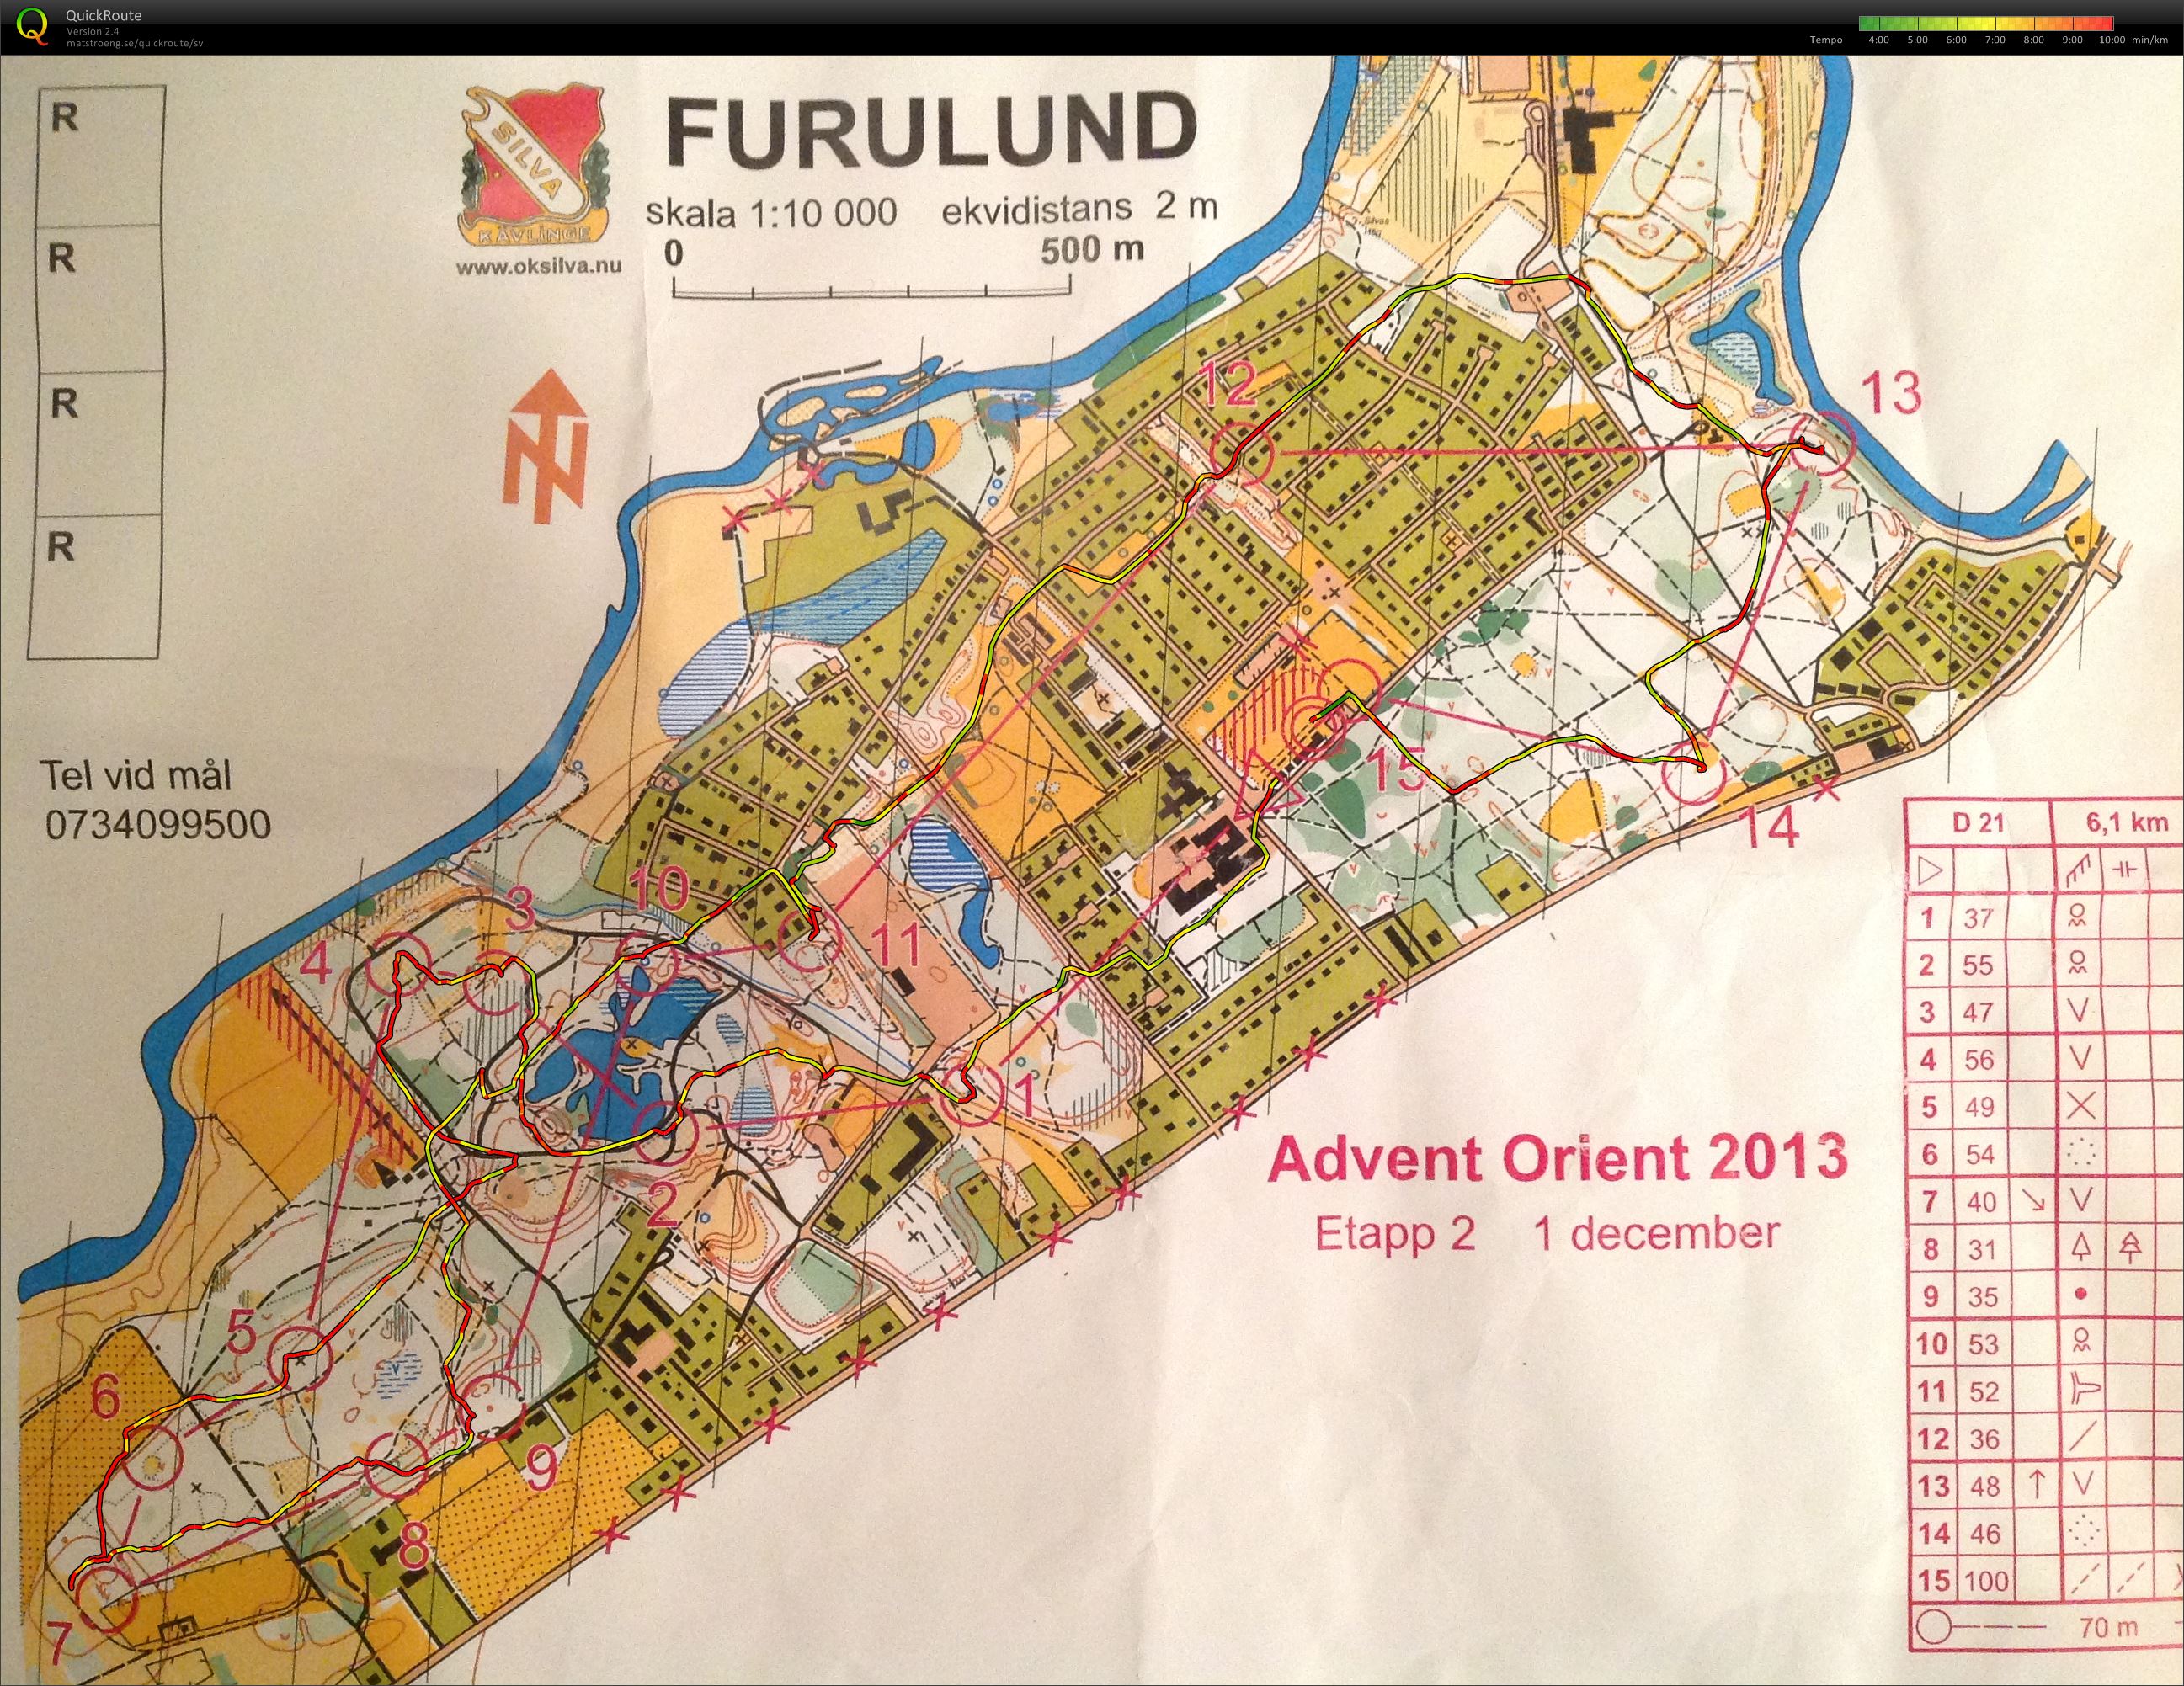 Advent Orient Furulund (01.12.2013)